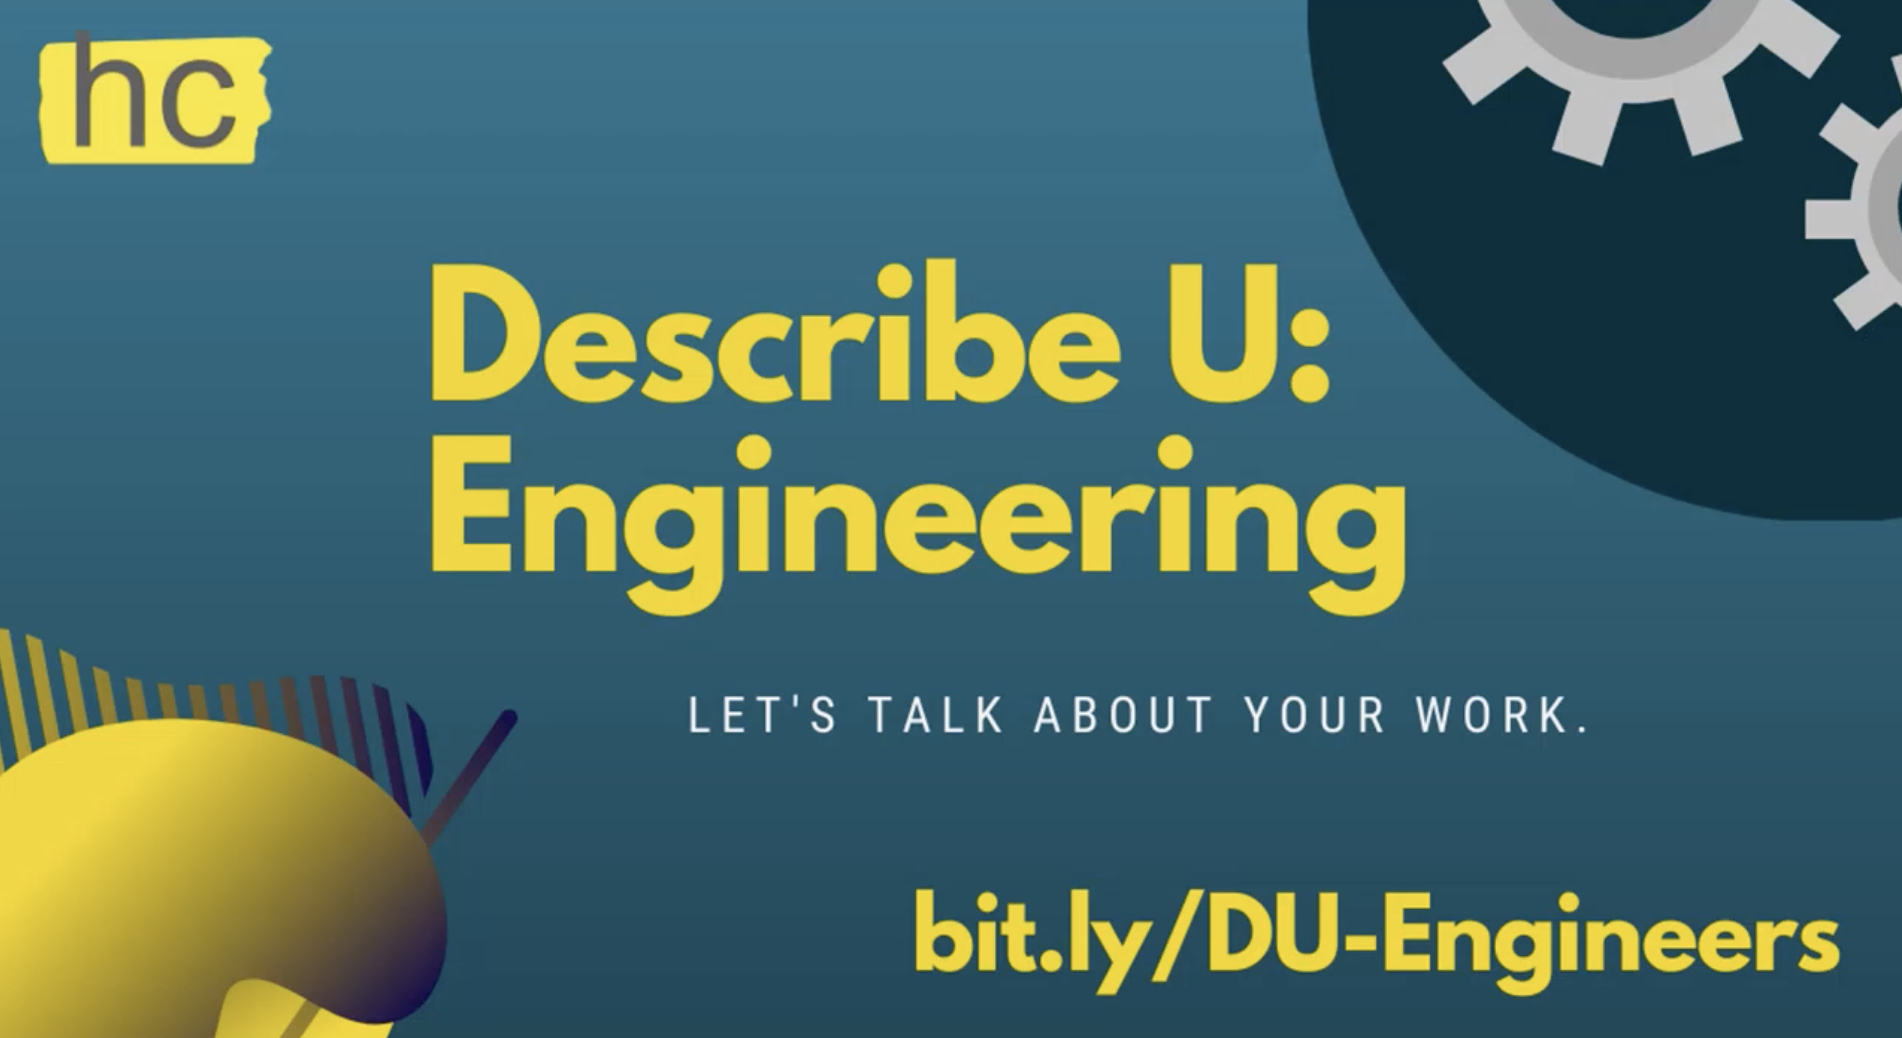 Describe You - Engineering